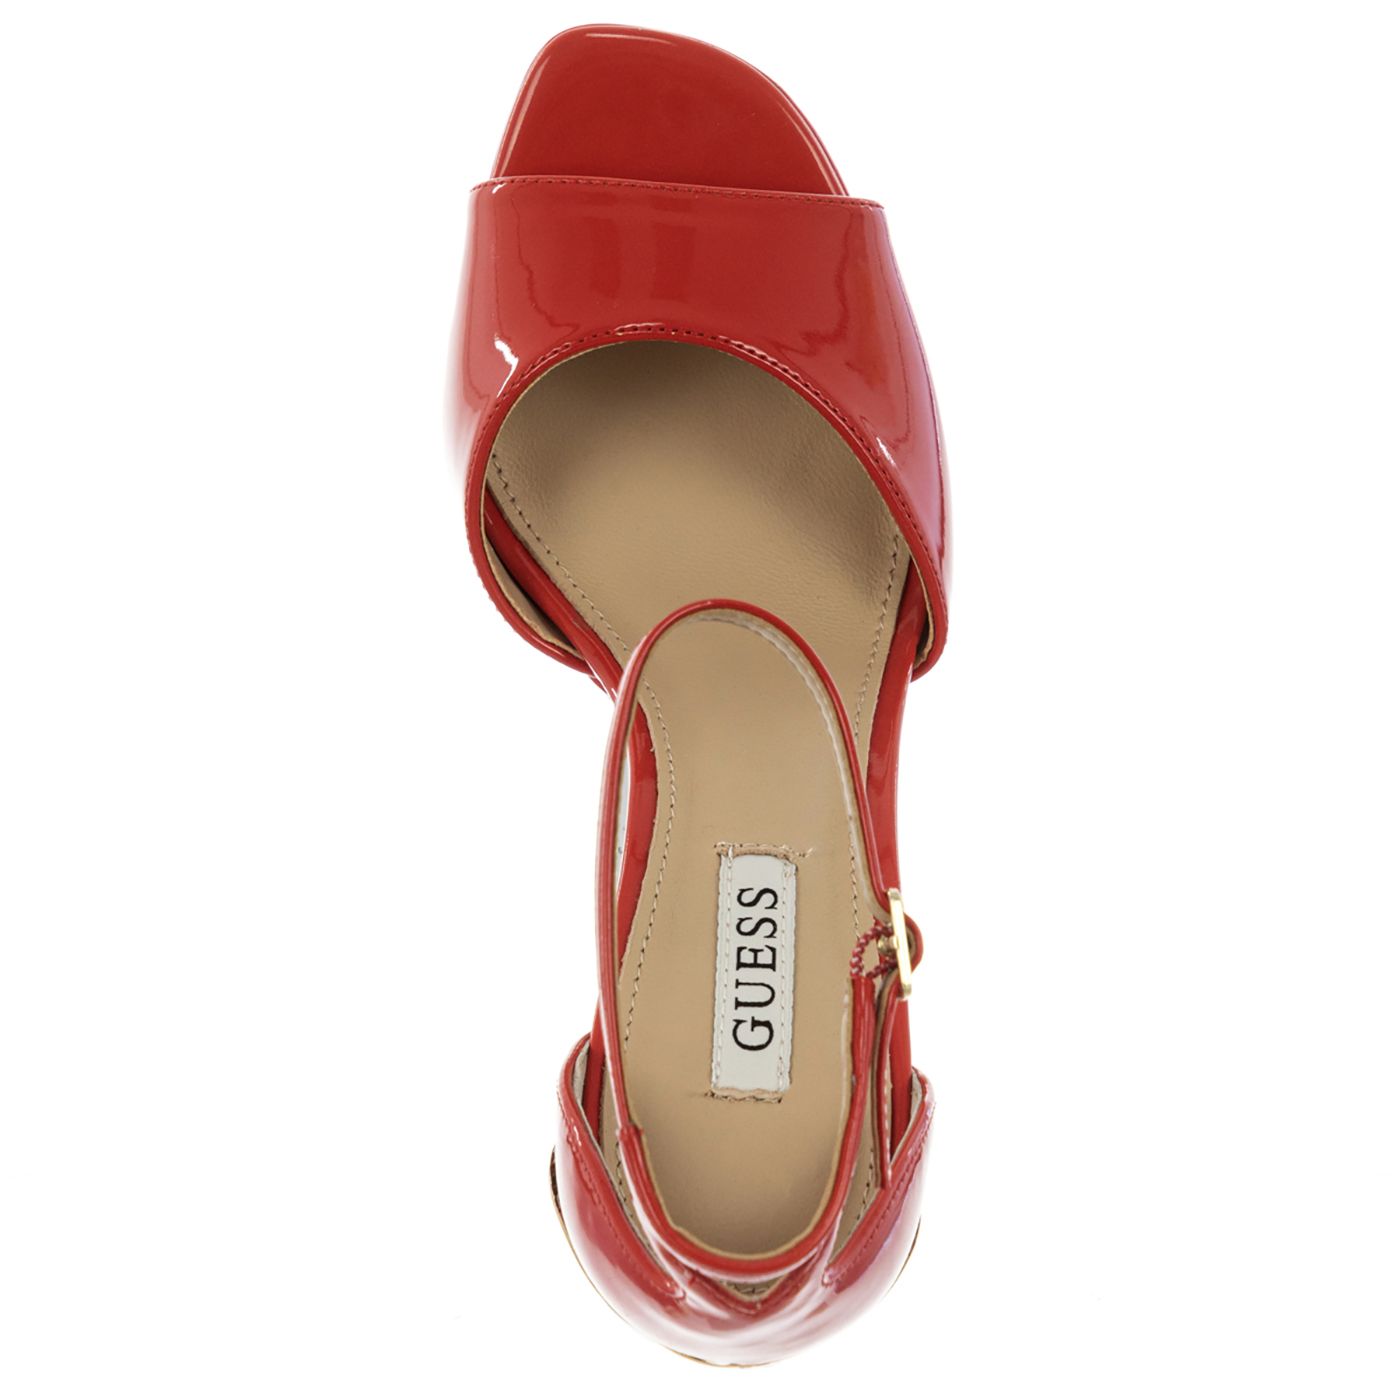 Guess FL5ADNPAF07-RED-40 Vrouwelijk en elegant, deze rode schoenen zullen perfect zijn voor een avondje uit.